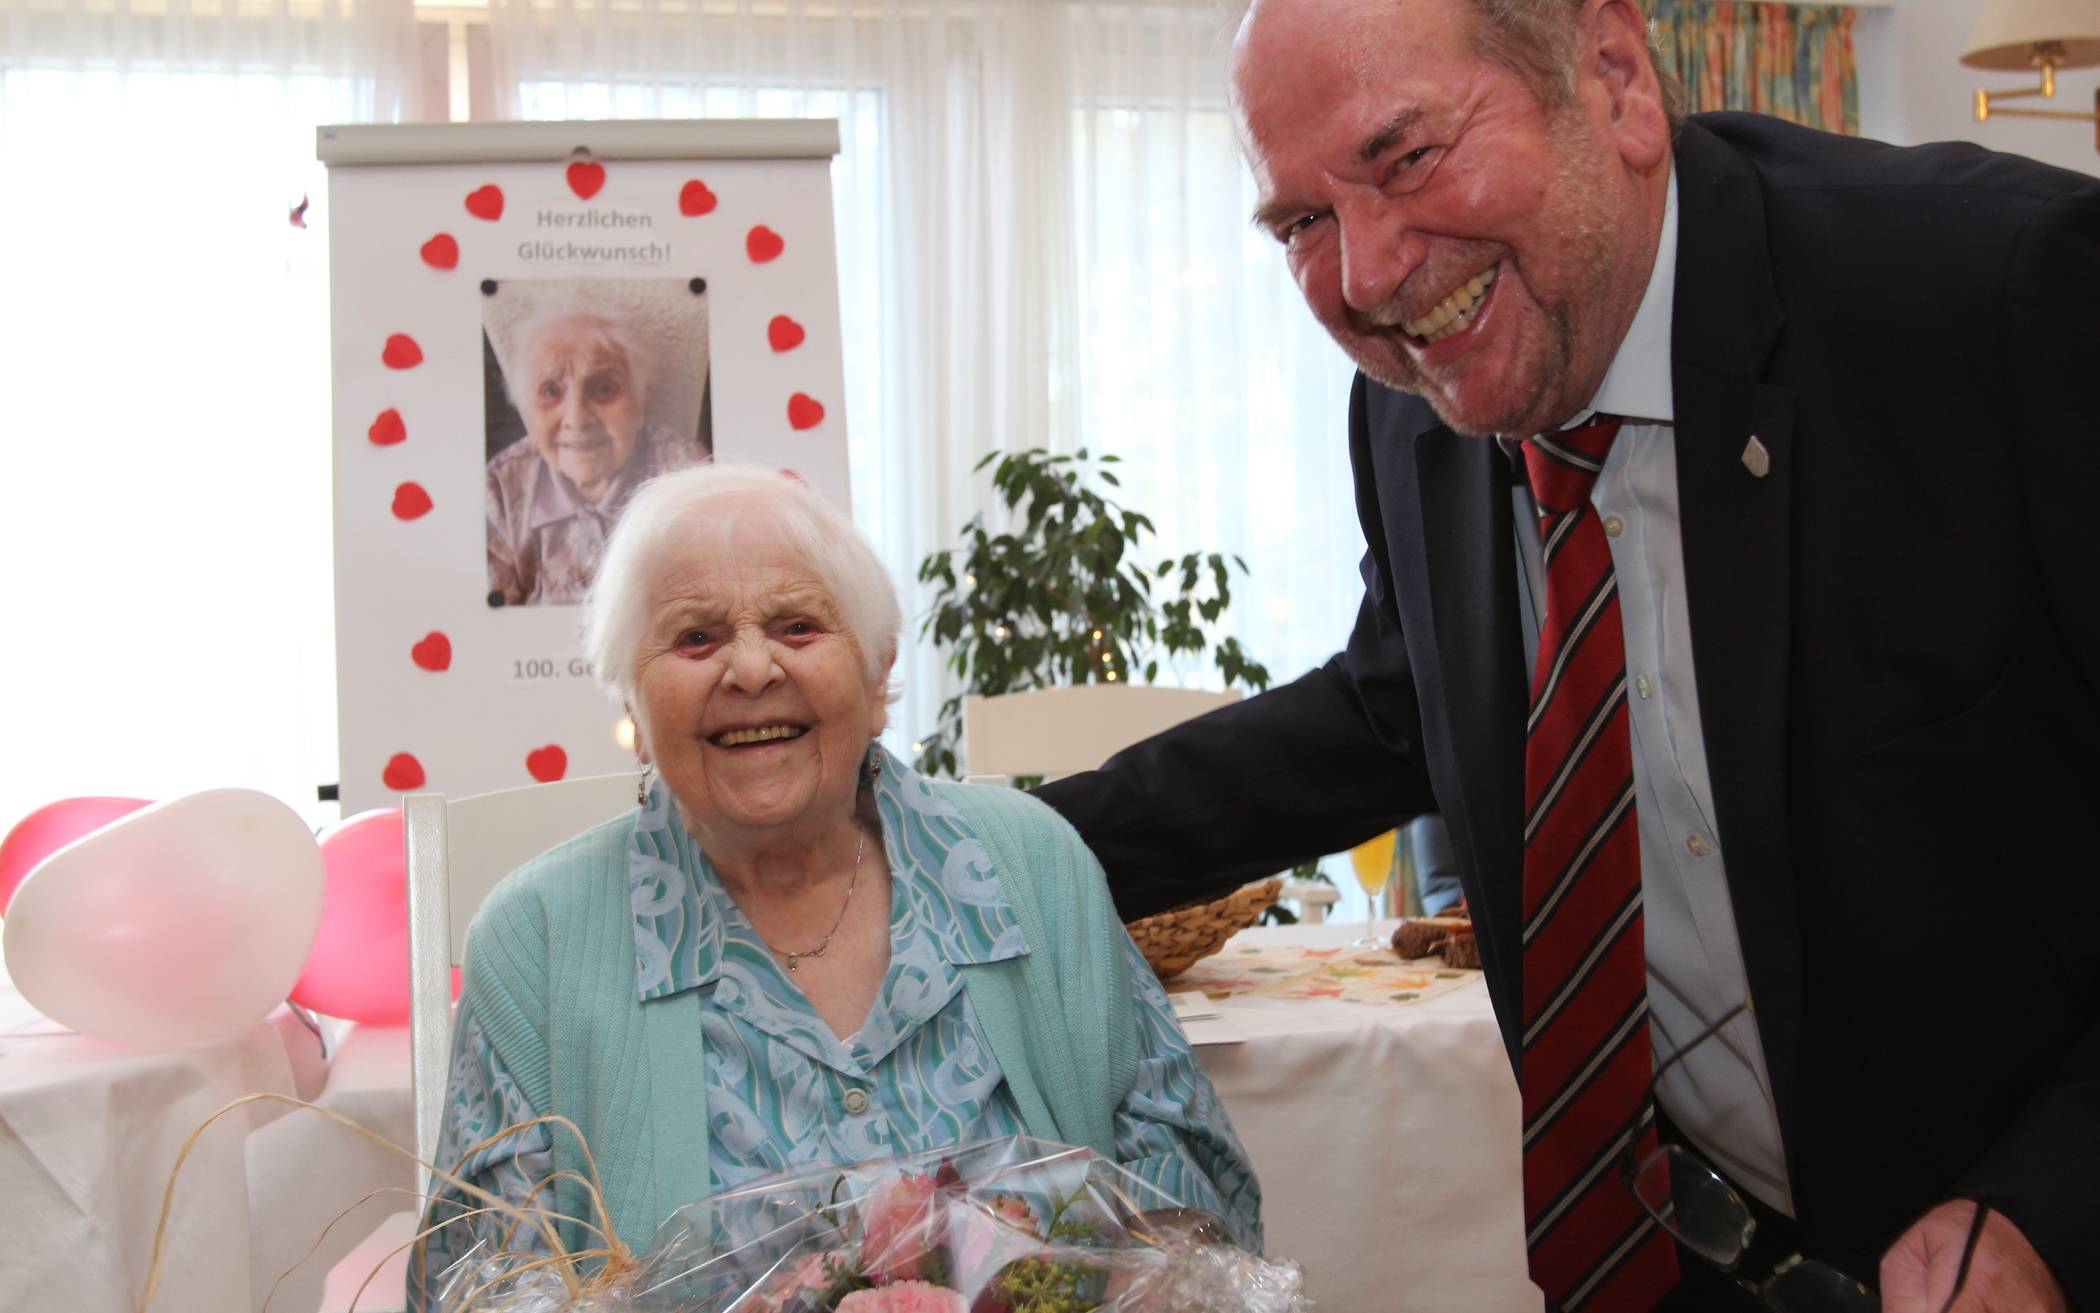  Vize-Bürgermeister Edmund Feuster gratulierte der Jubilarin Gertrud Winter im Namen der Stadt und überbrachte Glückwünsche des Kreises sowie des Landes. 